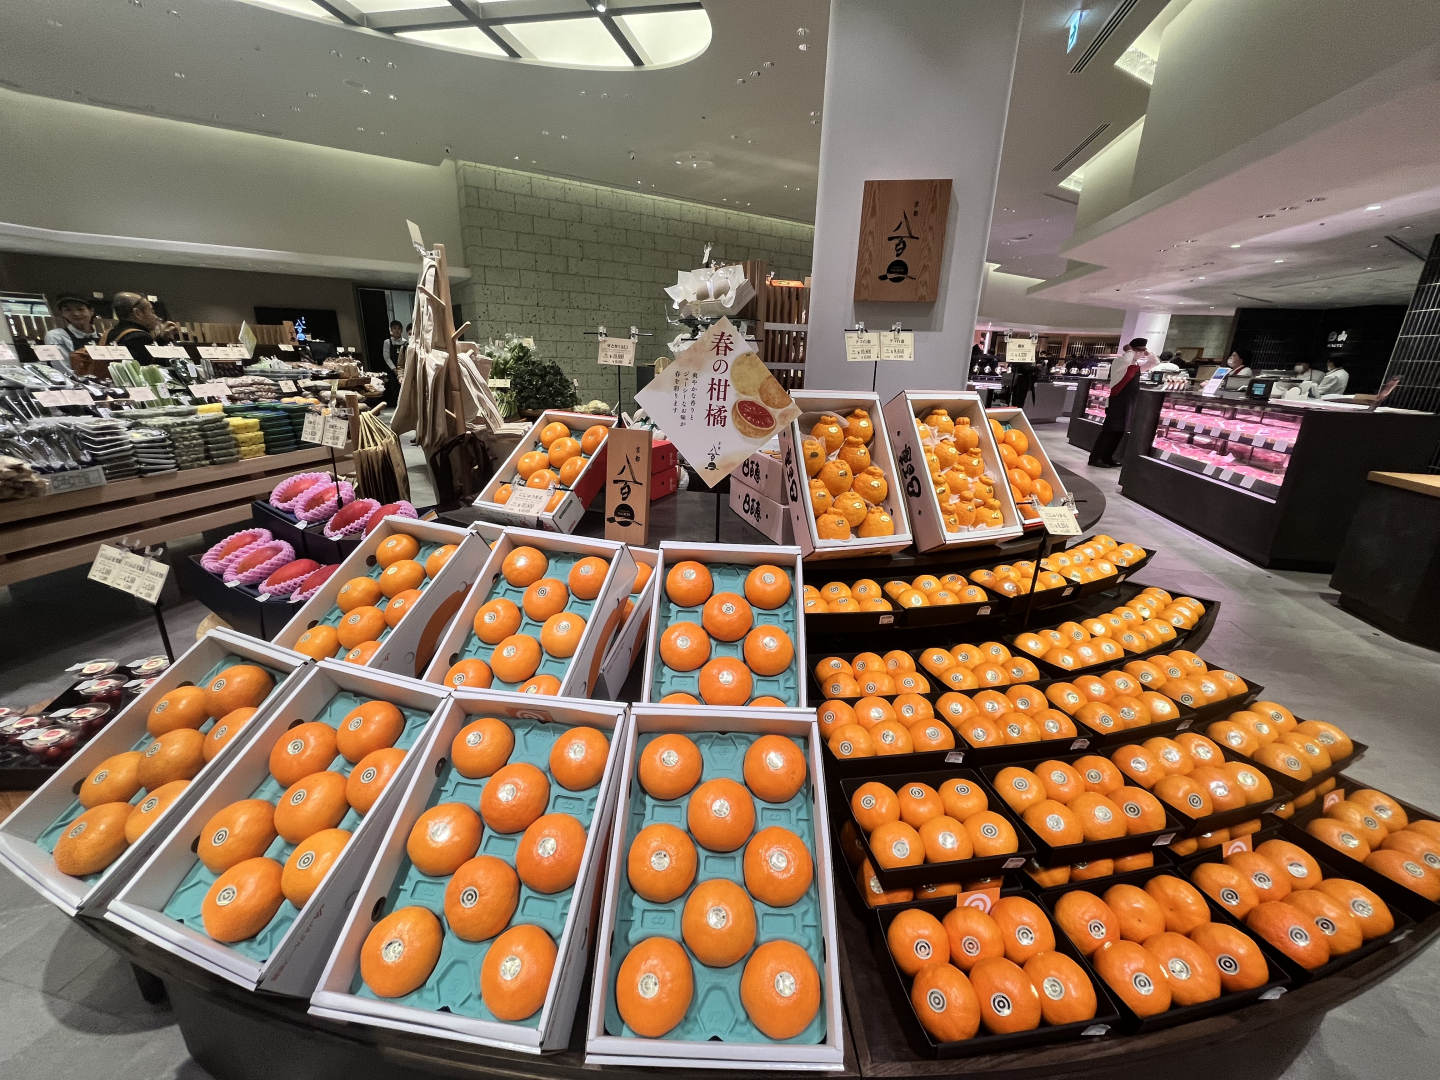 柑橘類が並んだコーナー。佐賀産「にじゅうまる」「デコ百恵」がどんな味なのかは、店舗中央の「お帳場」にいるスタッフに質問を。